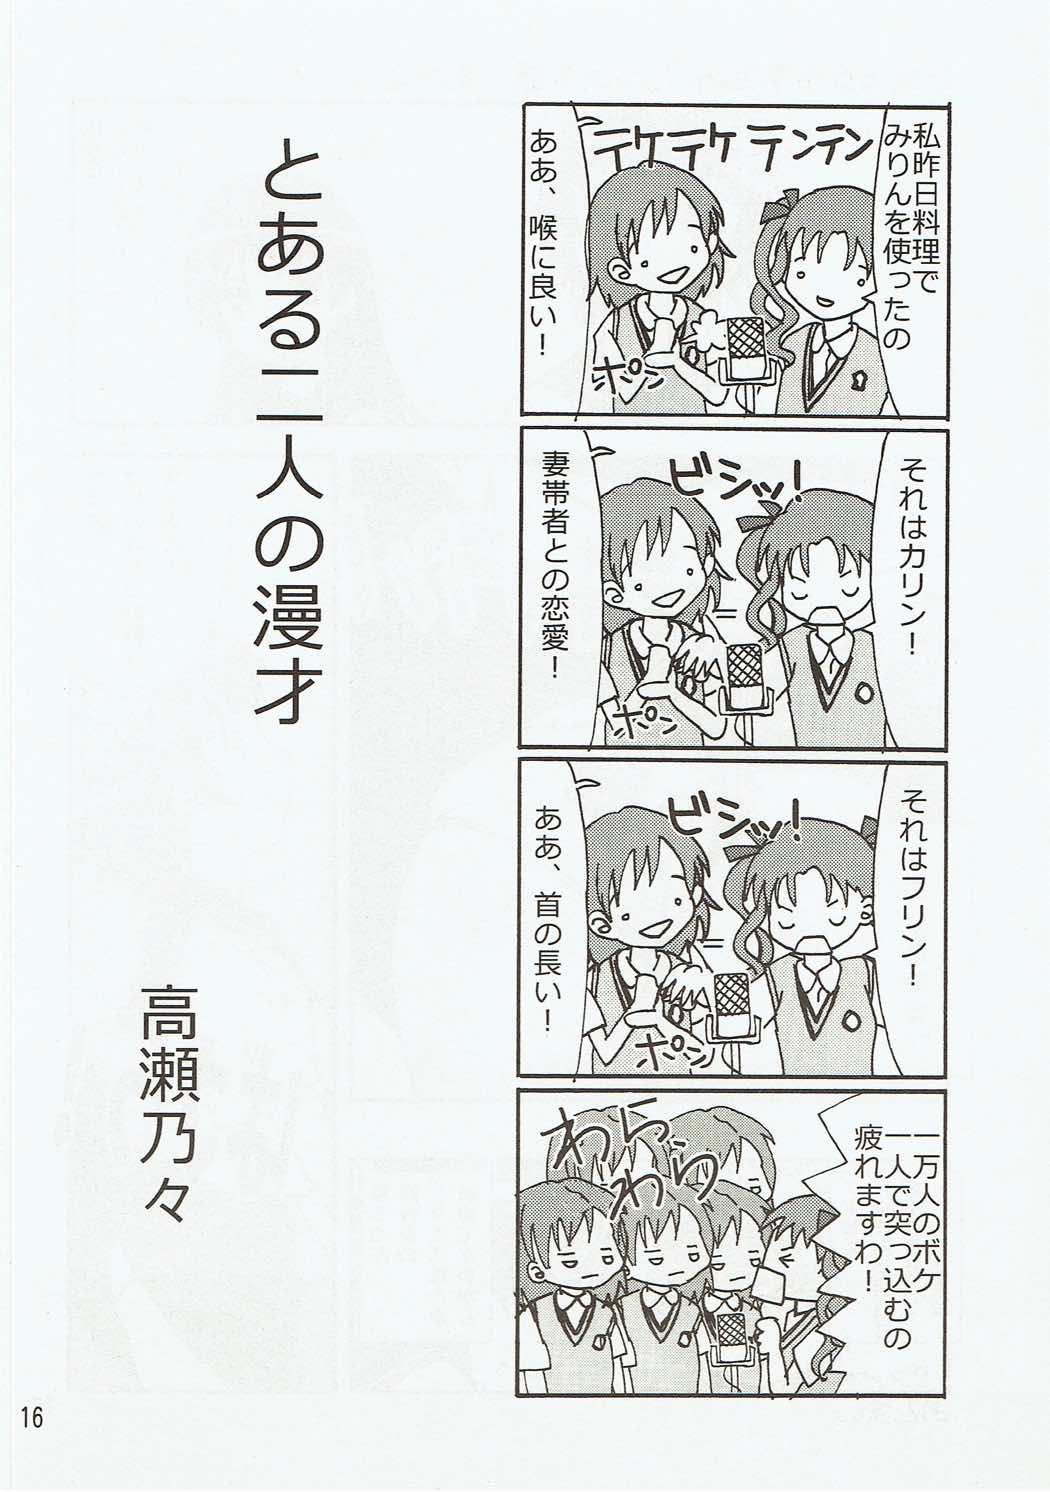 Sex Kuroneko - Toaru kagaku no railgun Old - Page 15